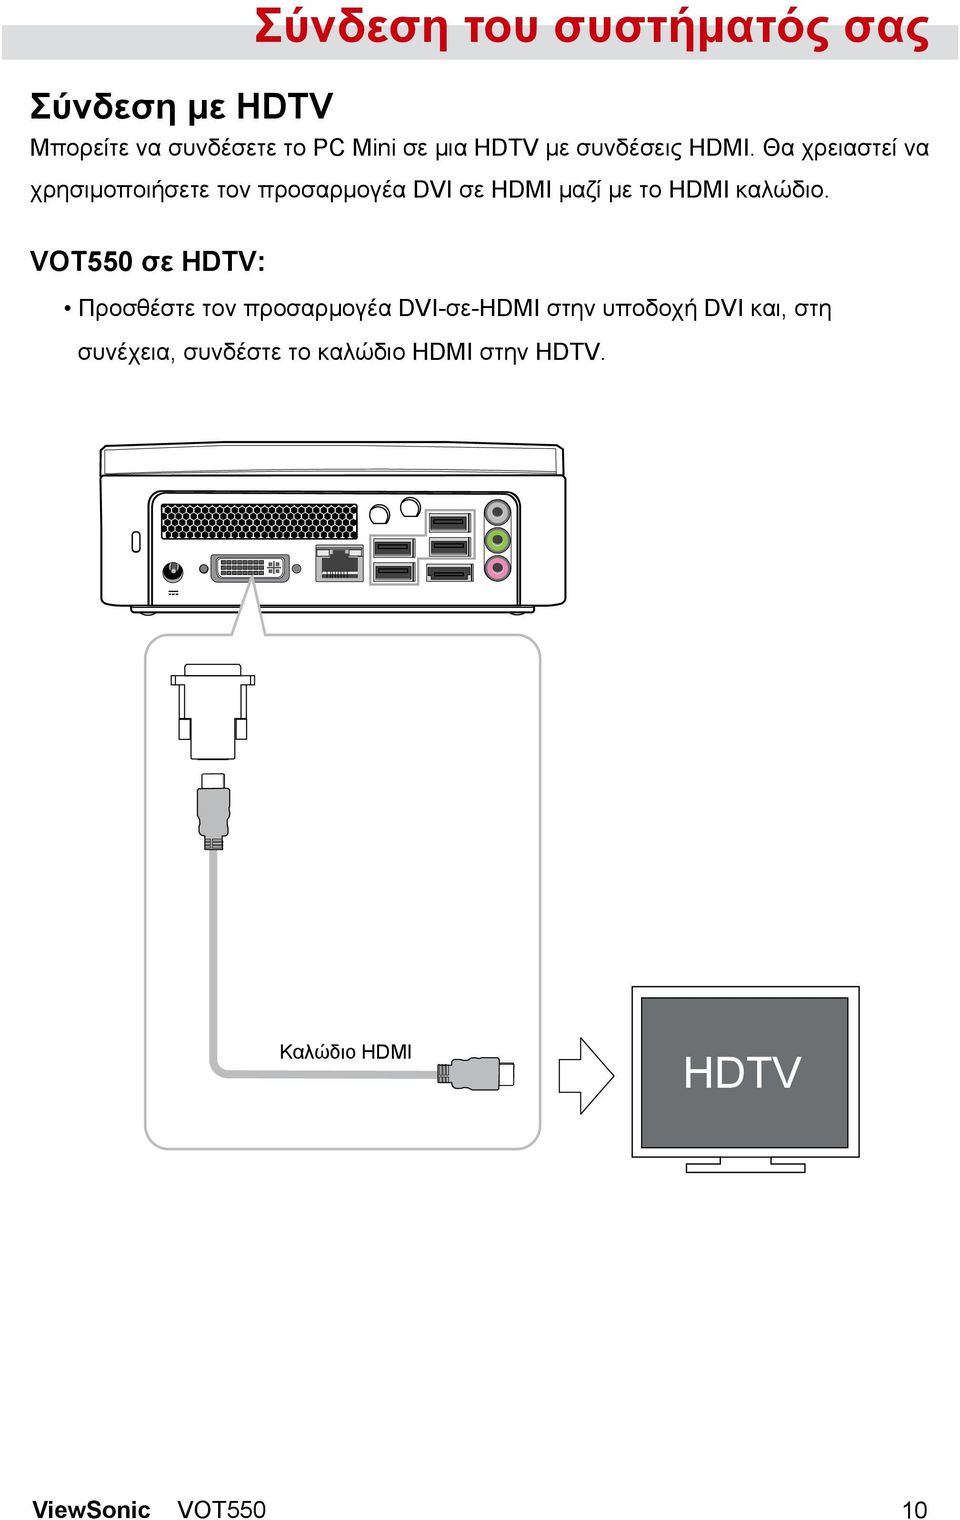 Θα χρειαστεί να χρησιμοποιήσετε τον προσαρμογέα DVI σε HDMI μαζί με το HDMI καλώδιο.